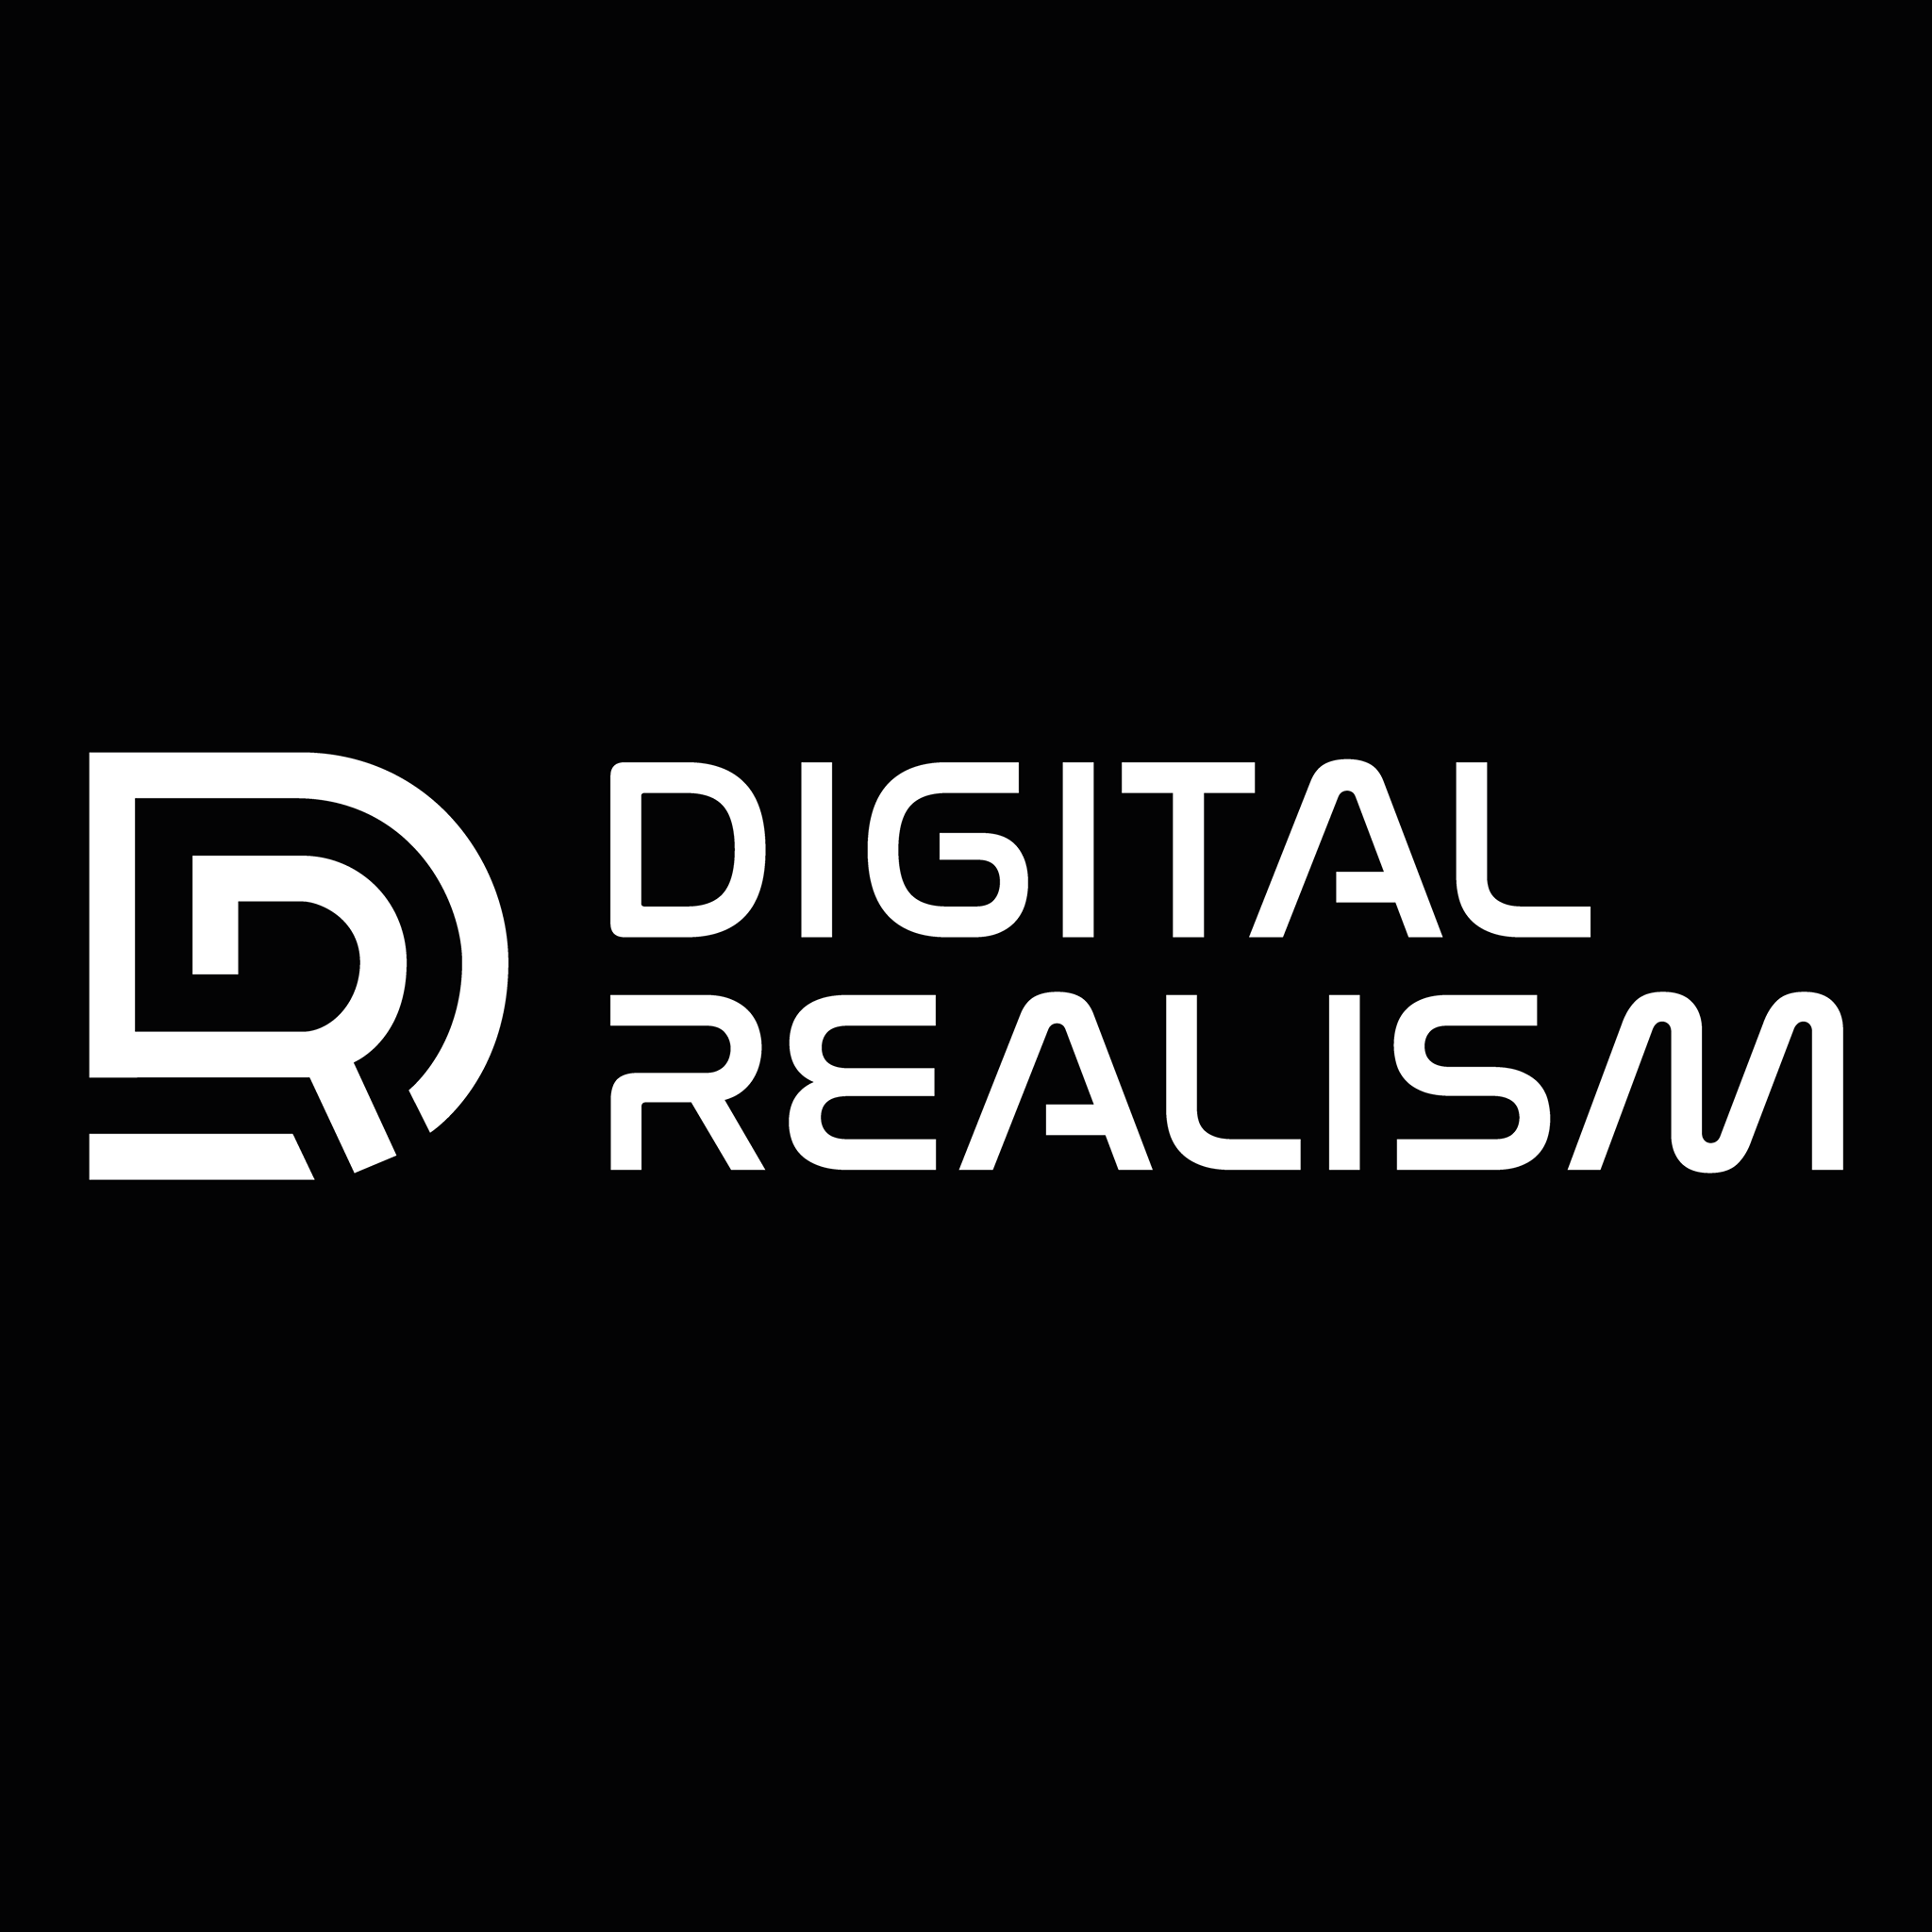 Digital Realism Studios